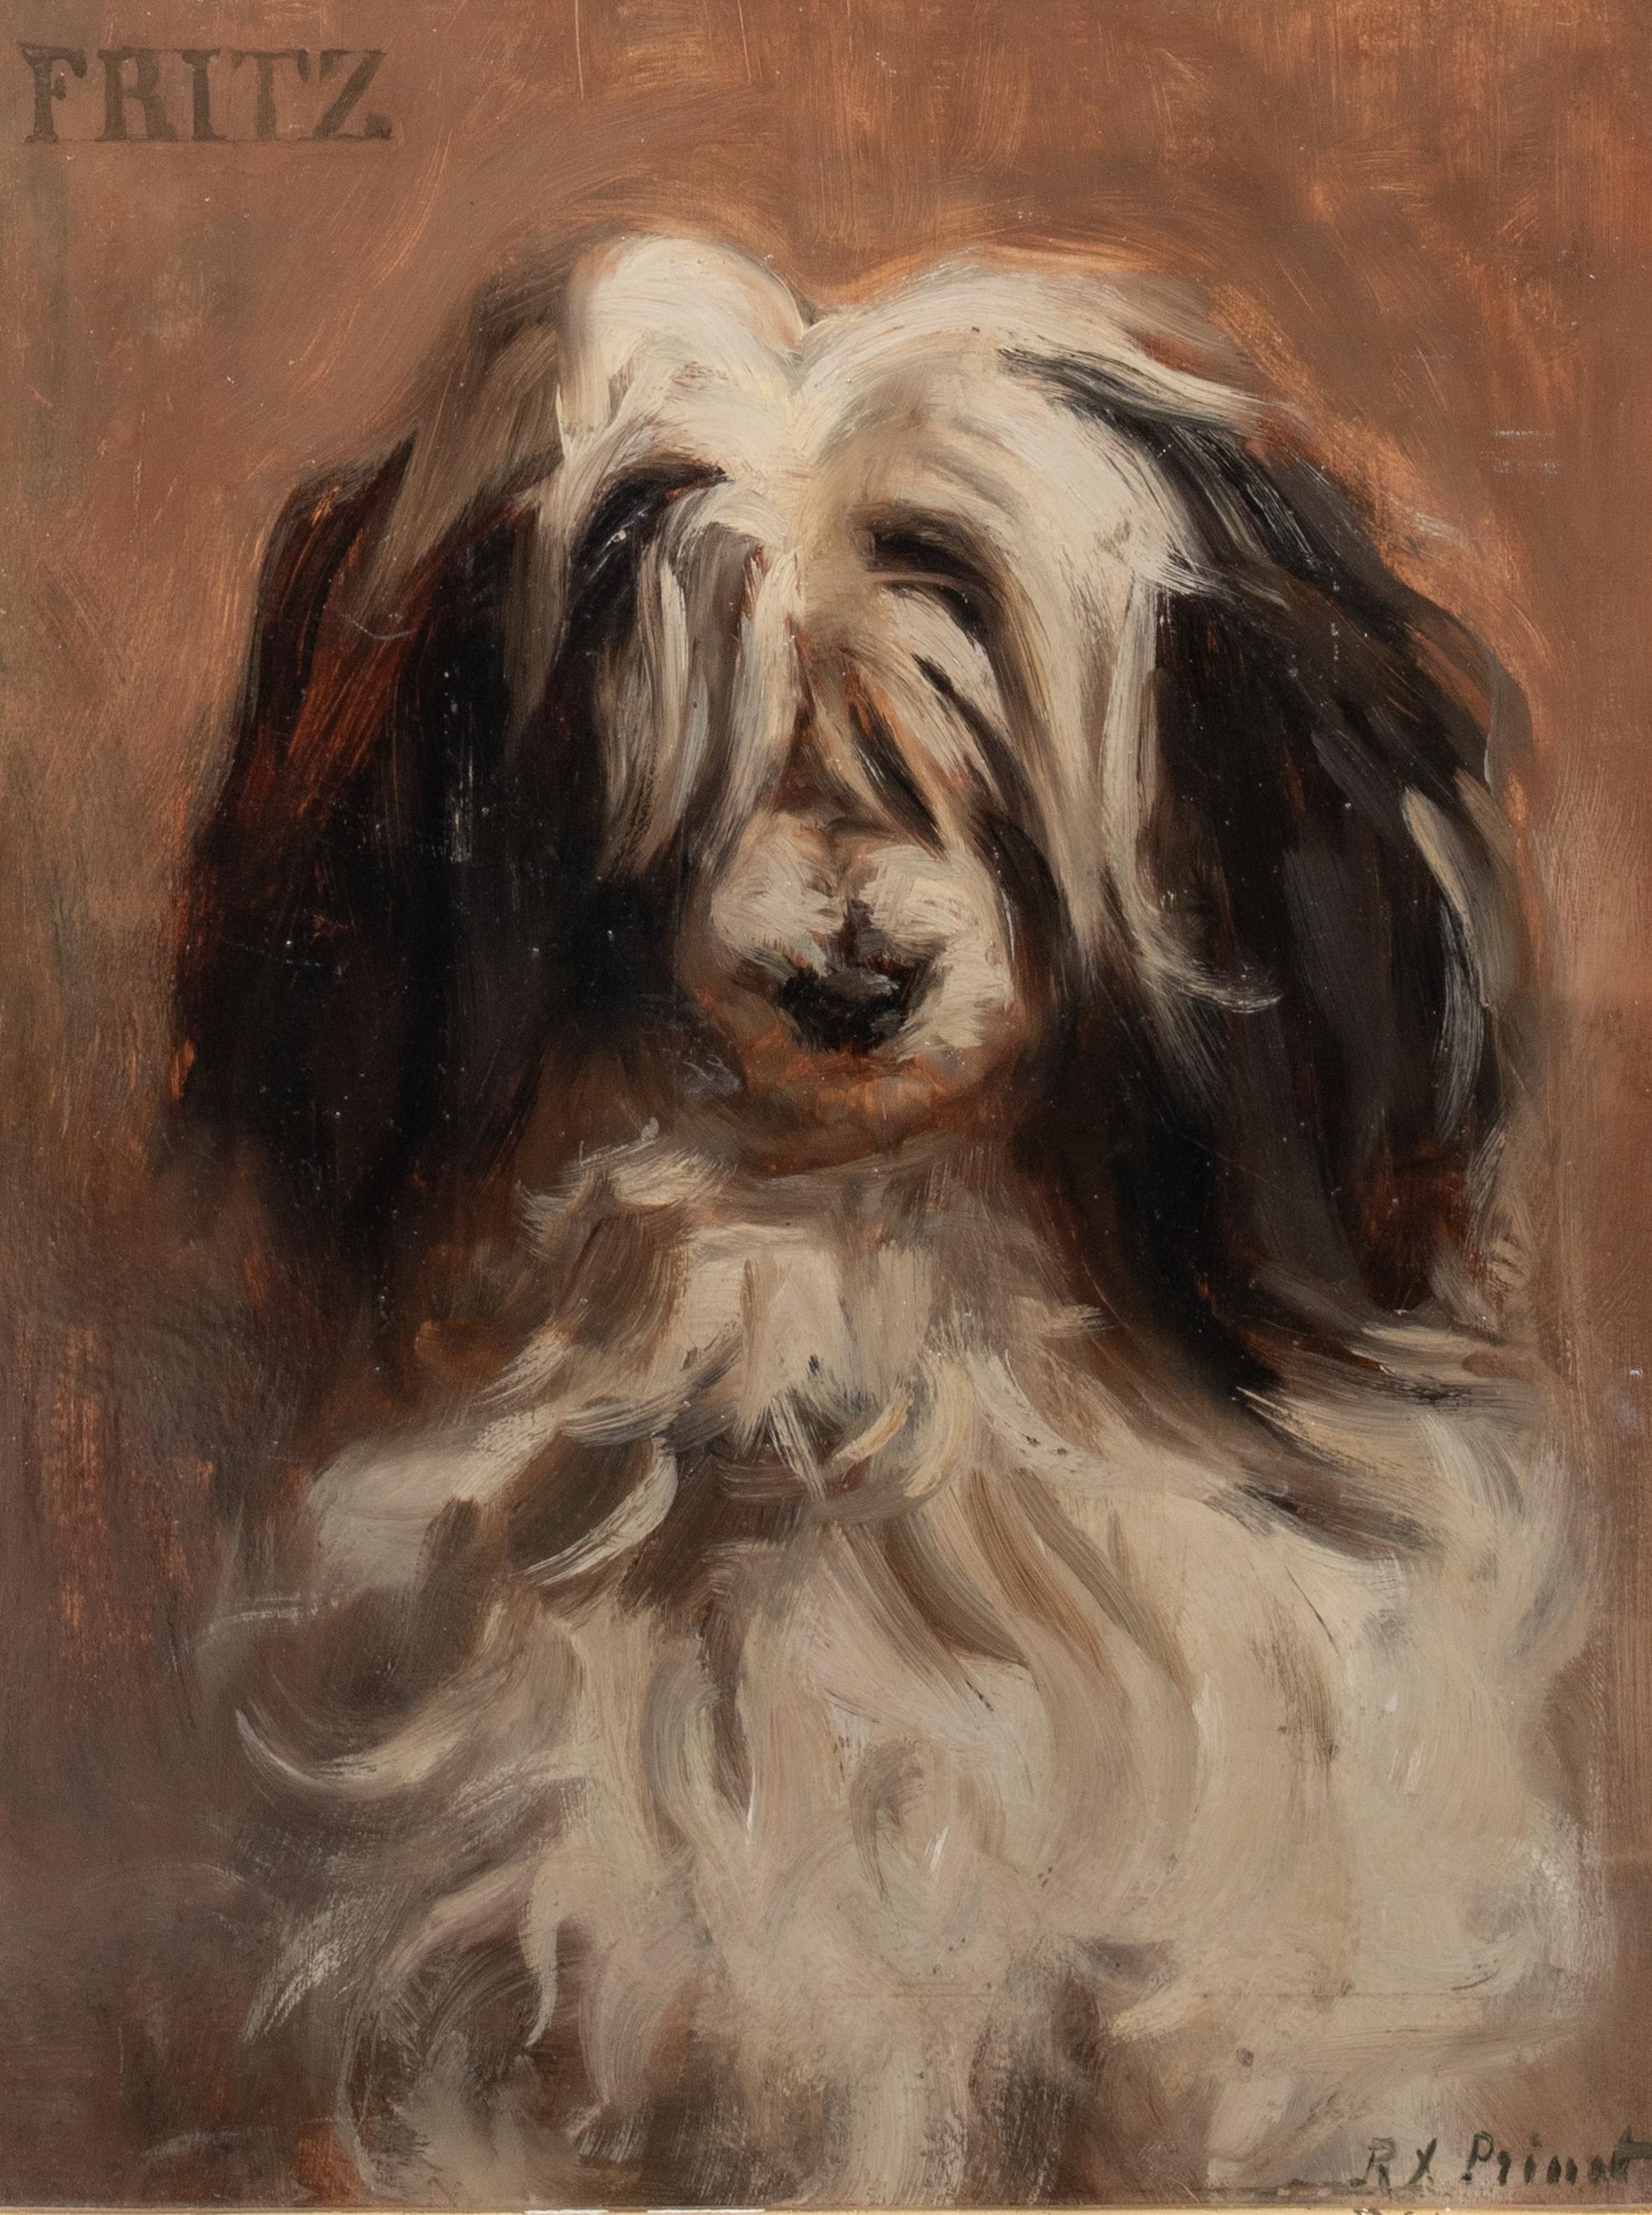 Fritz, un mouton français, daté de 1897, Paris 

Portrait Rene-Xavier Prinet (1861-1946) vendu à 105 000 $.

Portrait d'un chien de berger français du XIXe siècle, huile sur panneau de René-Xavier Prinet. Portrait de tête d'un chien de berger